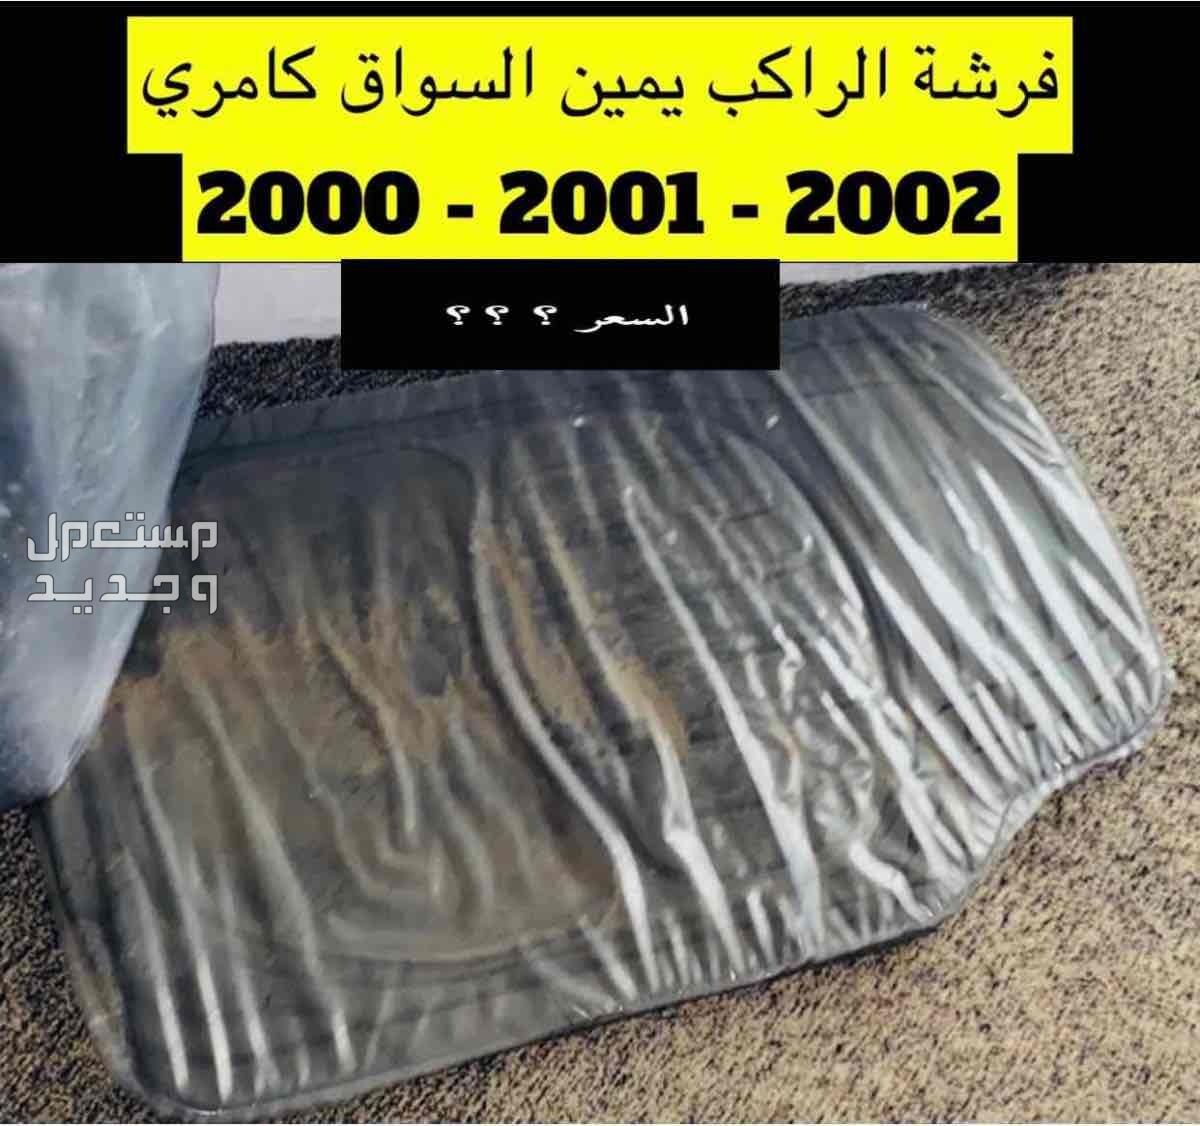 قطع غيار كامري 2002 عايدي سعودي(مستخدم)